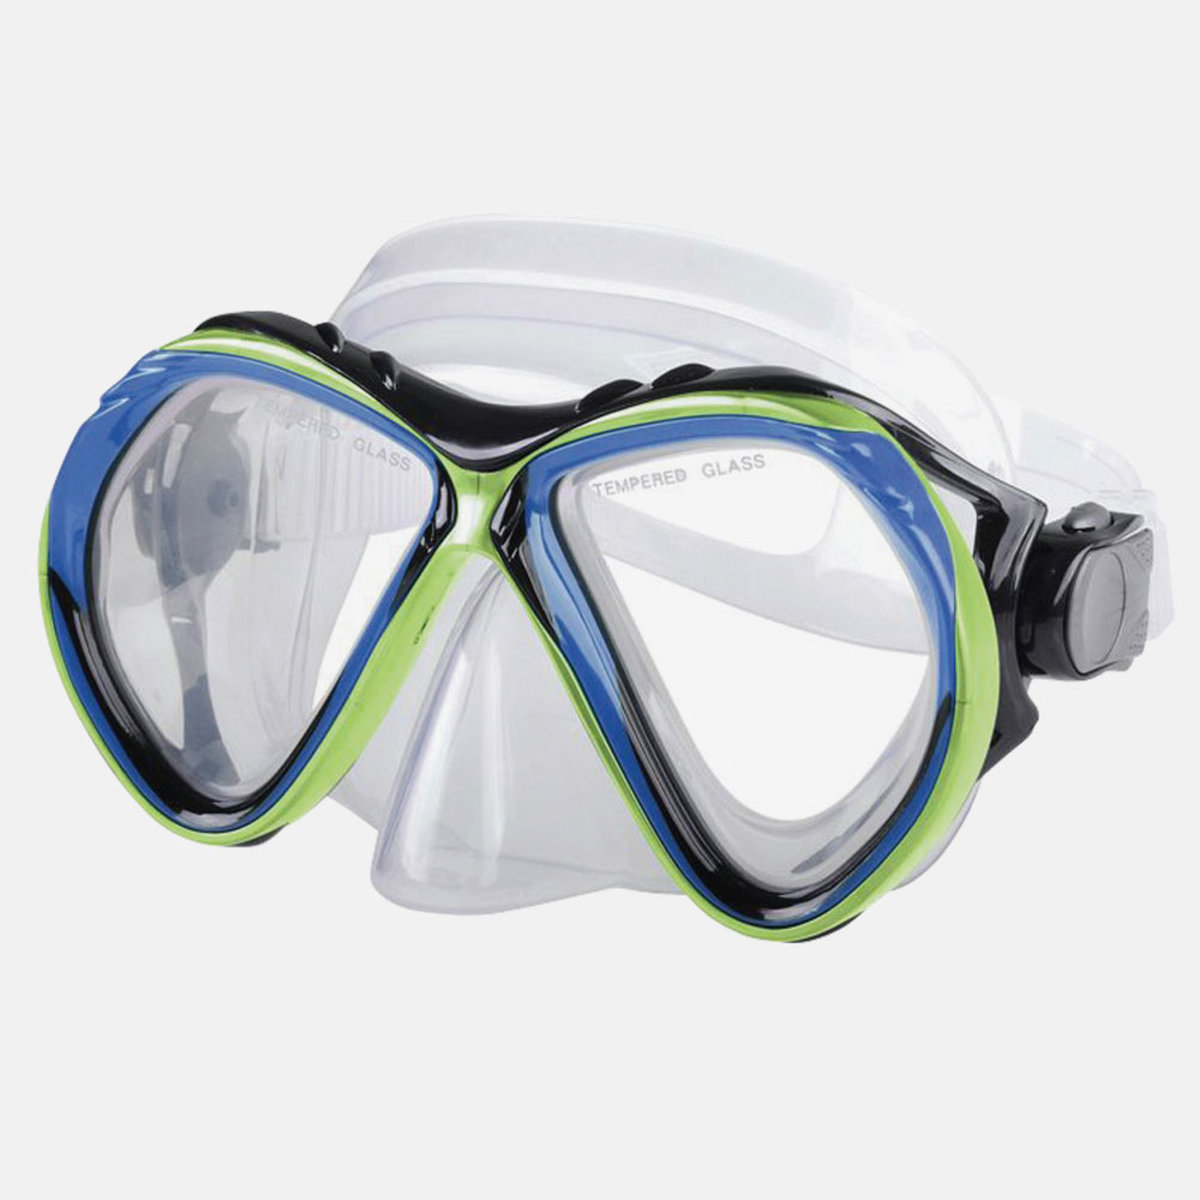 Belize SR. Mask Adult Advanced Series Snorkel Mask